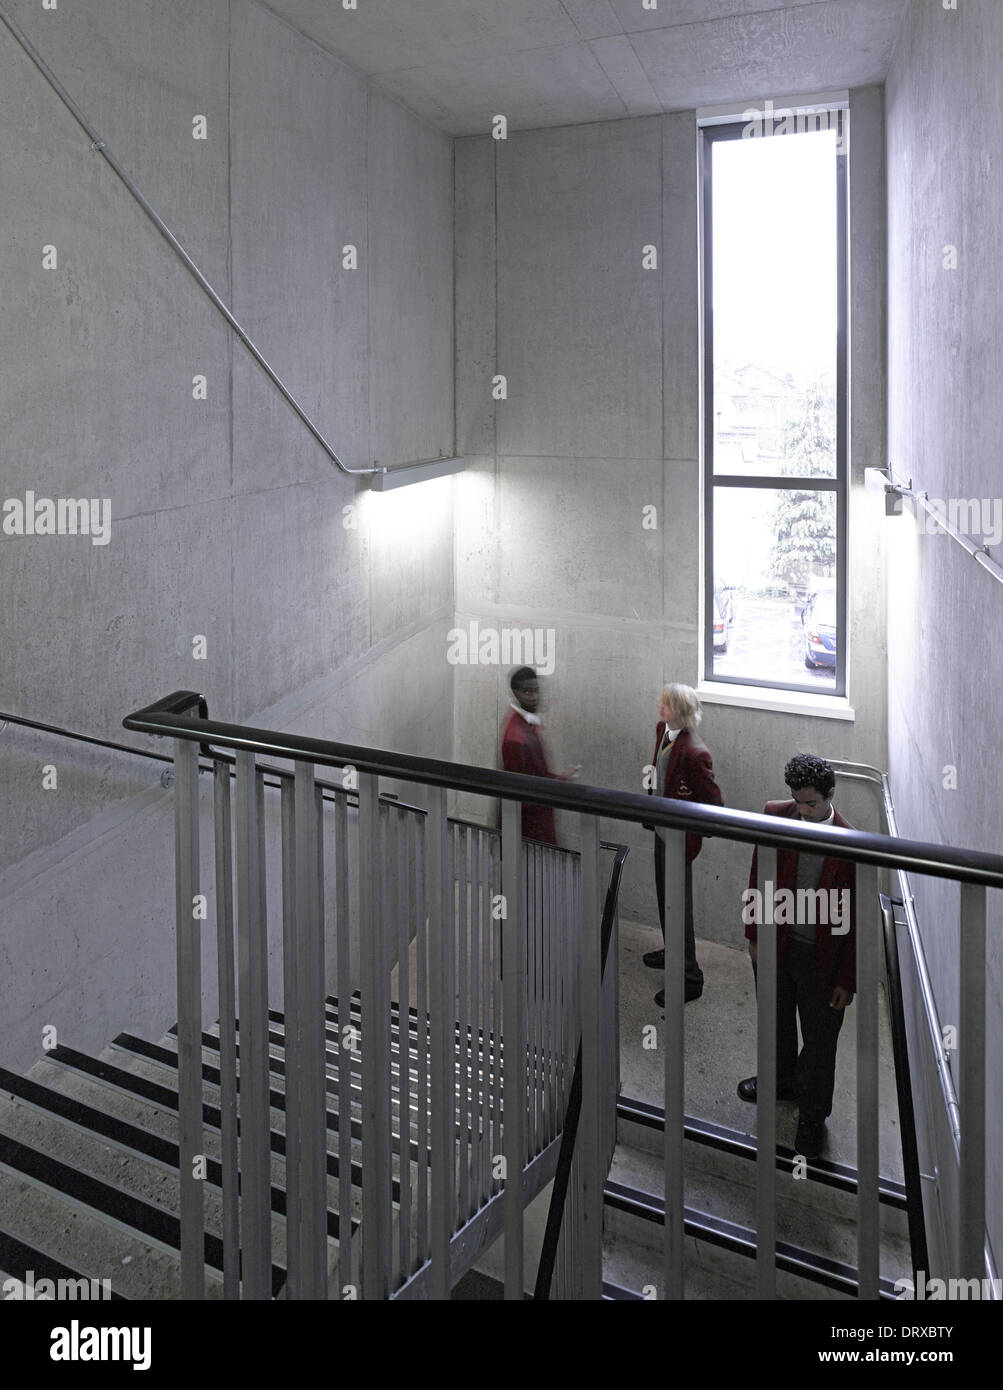 L'Apôtre saint Thomas College, Londres, Royaume-Uni. Architecte : Alliés et Morrison, 2013. Les étudiants de l'escalier. Banque D'Images